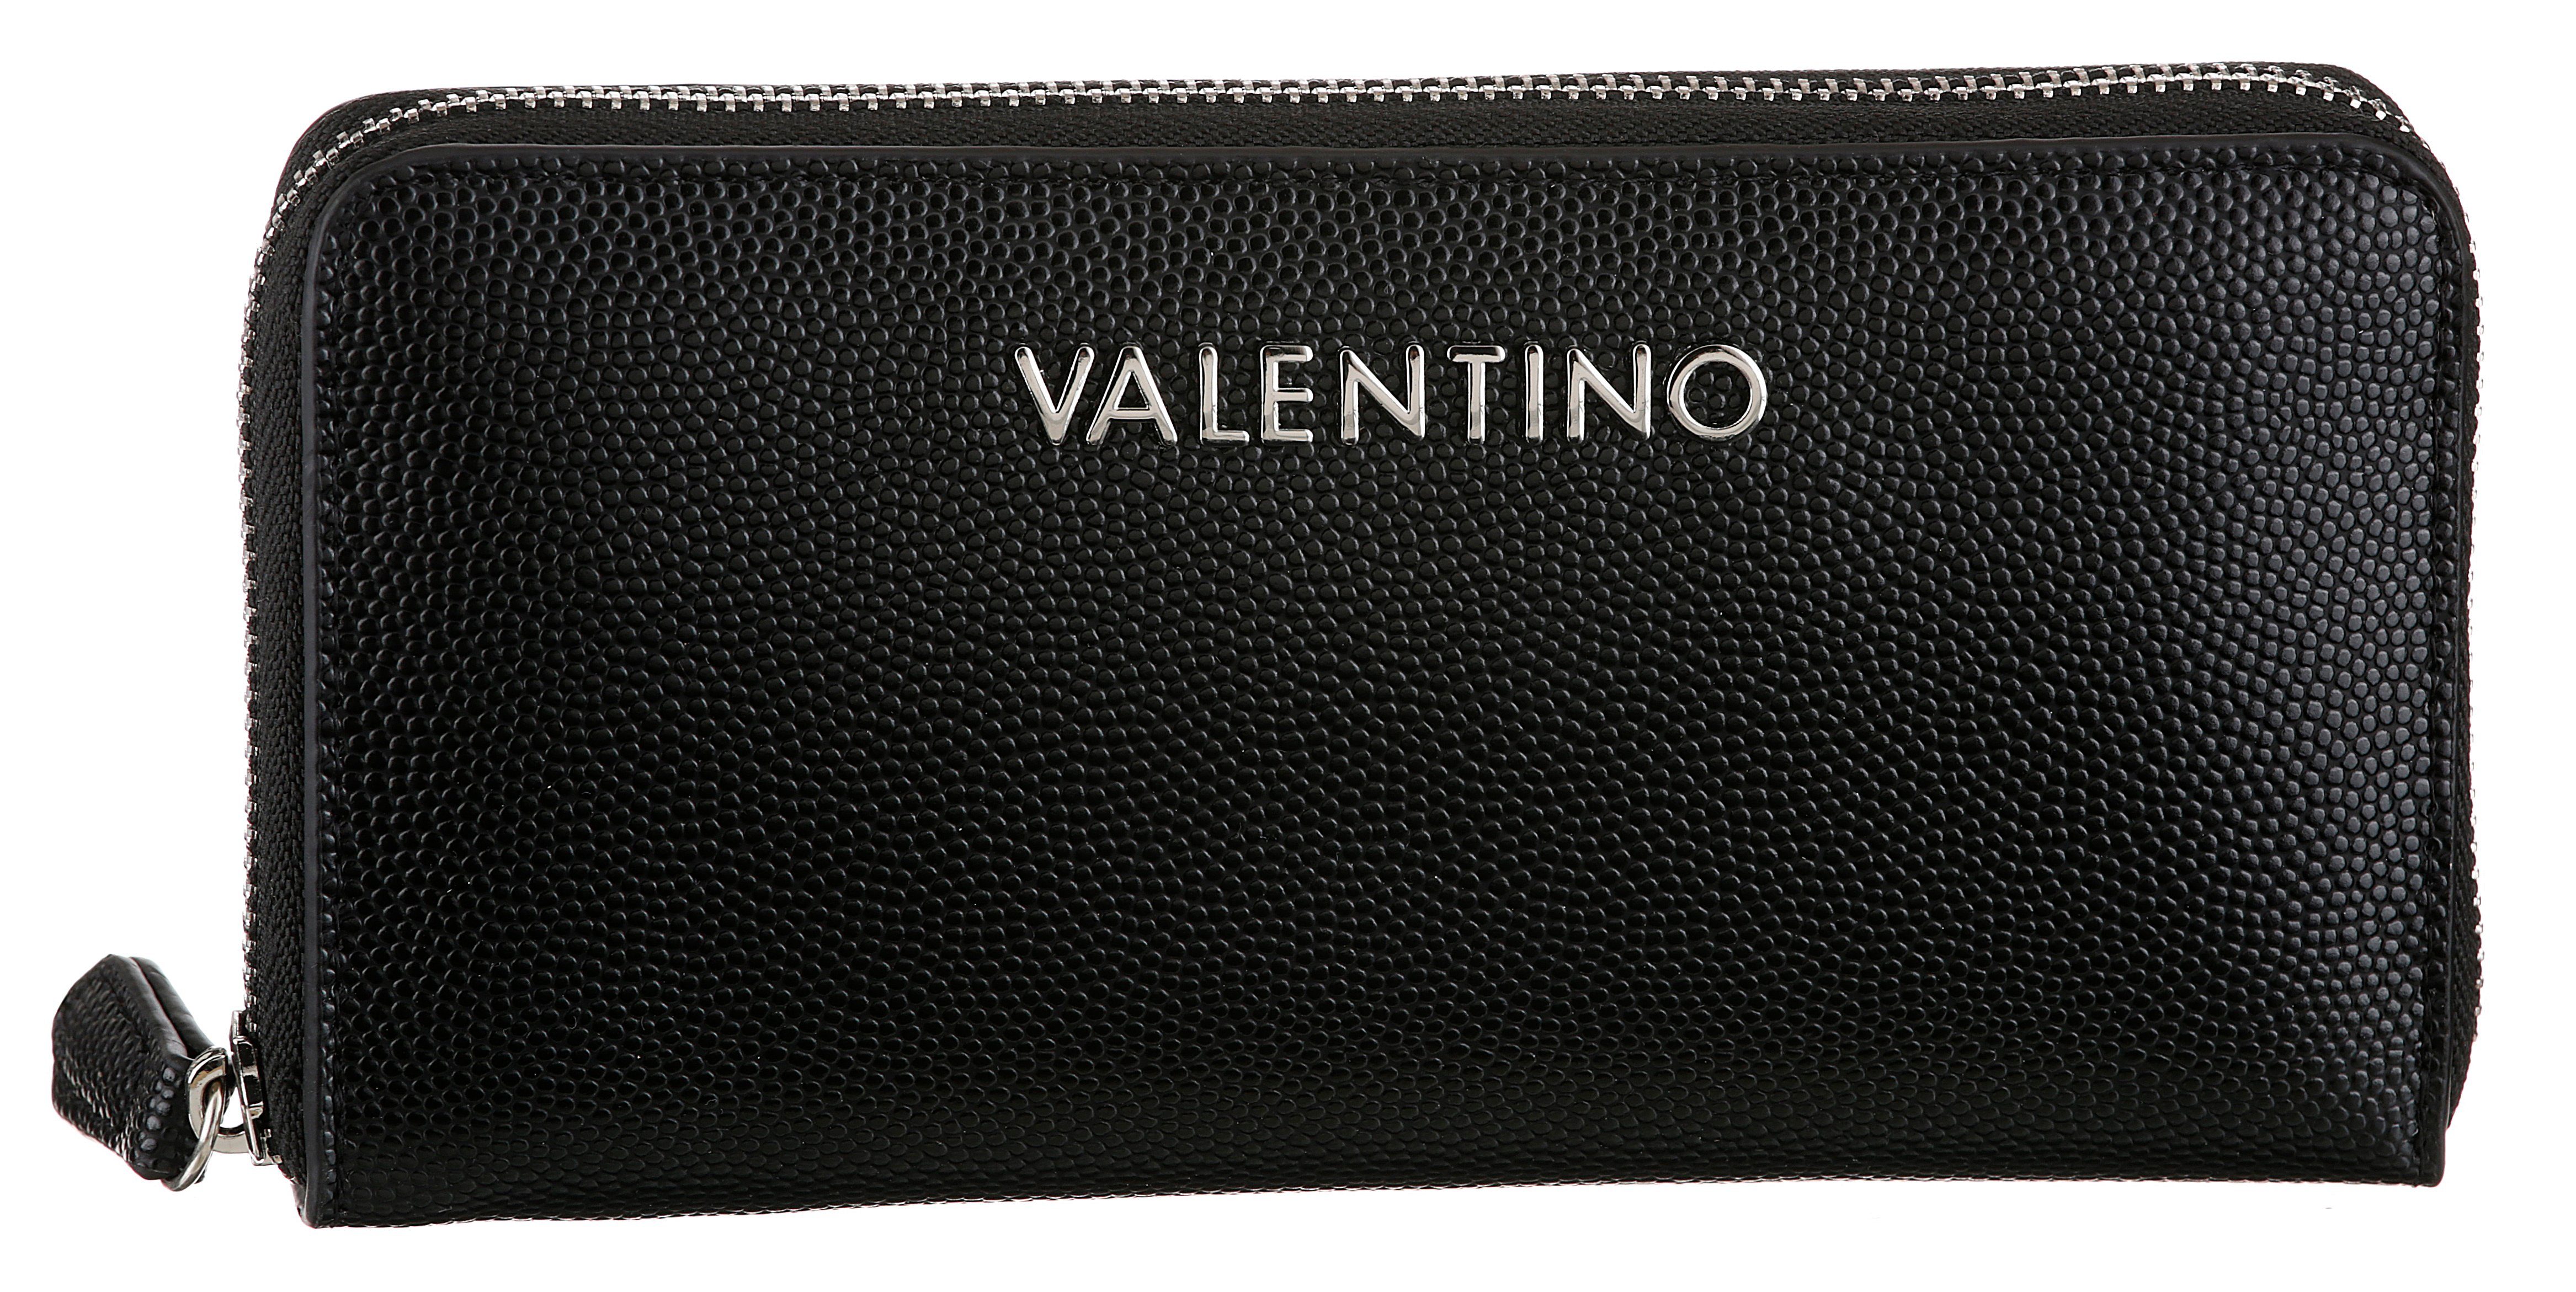 schwarz DIVINA, Oberfläche silberfarnene leicht mit genarbter VALENTINO und Geldbörse Details BAGS